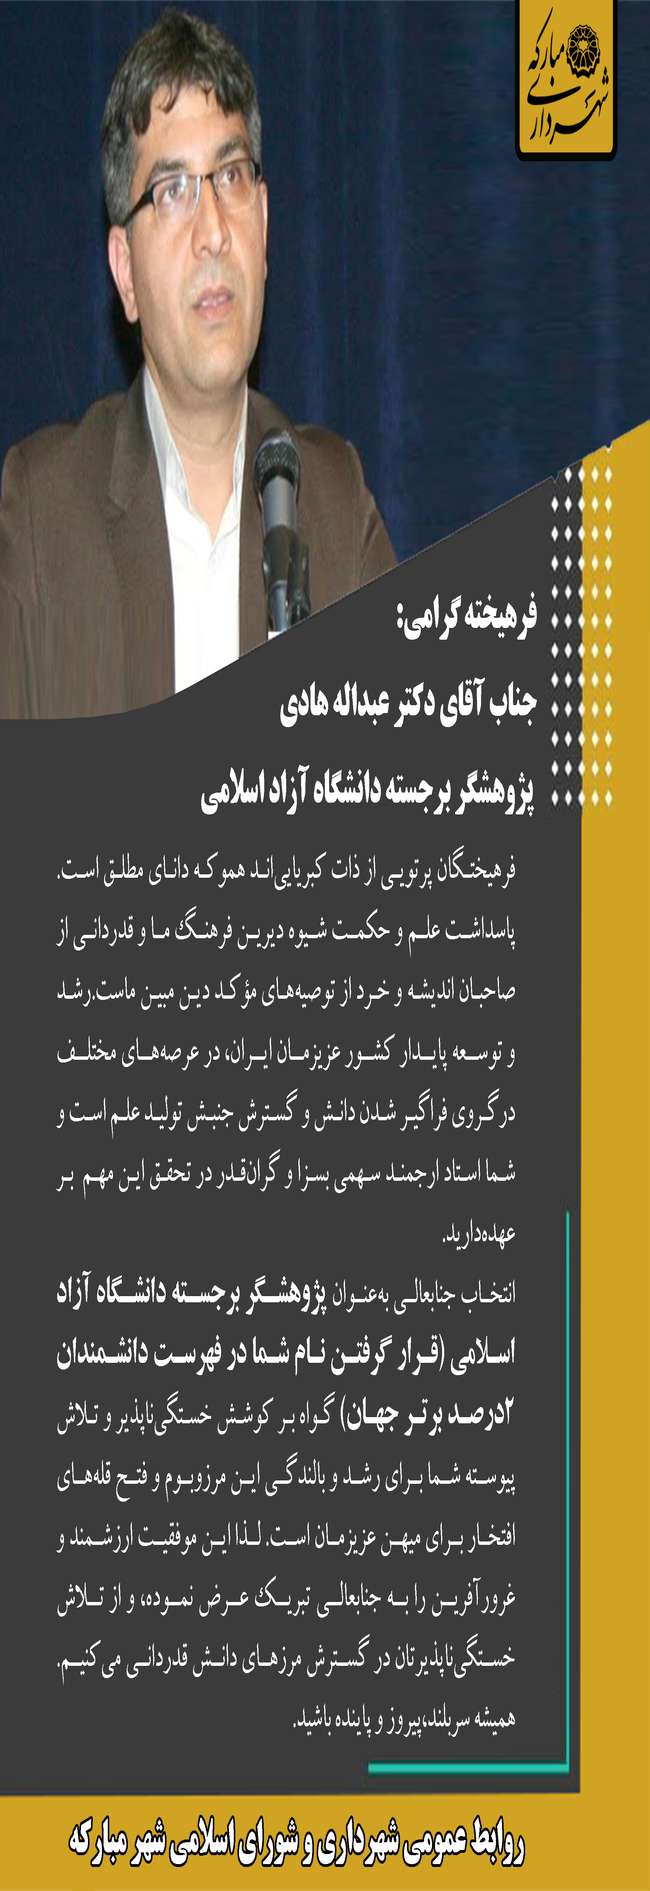 پیام تبریک مدیریت شهری مبارکه به دکتر عبداله هادی پژوهشگر برجسته دانشگاه آزاد اسلامی